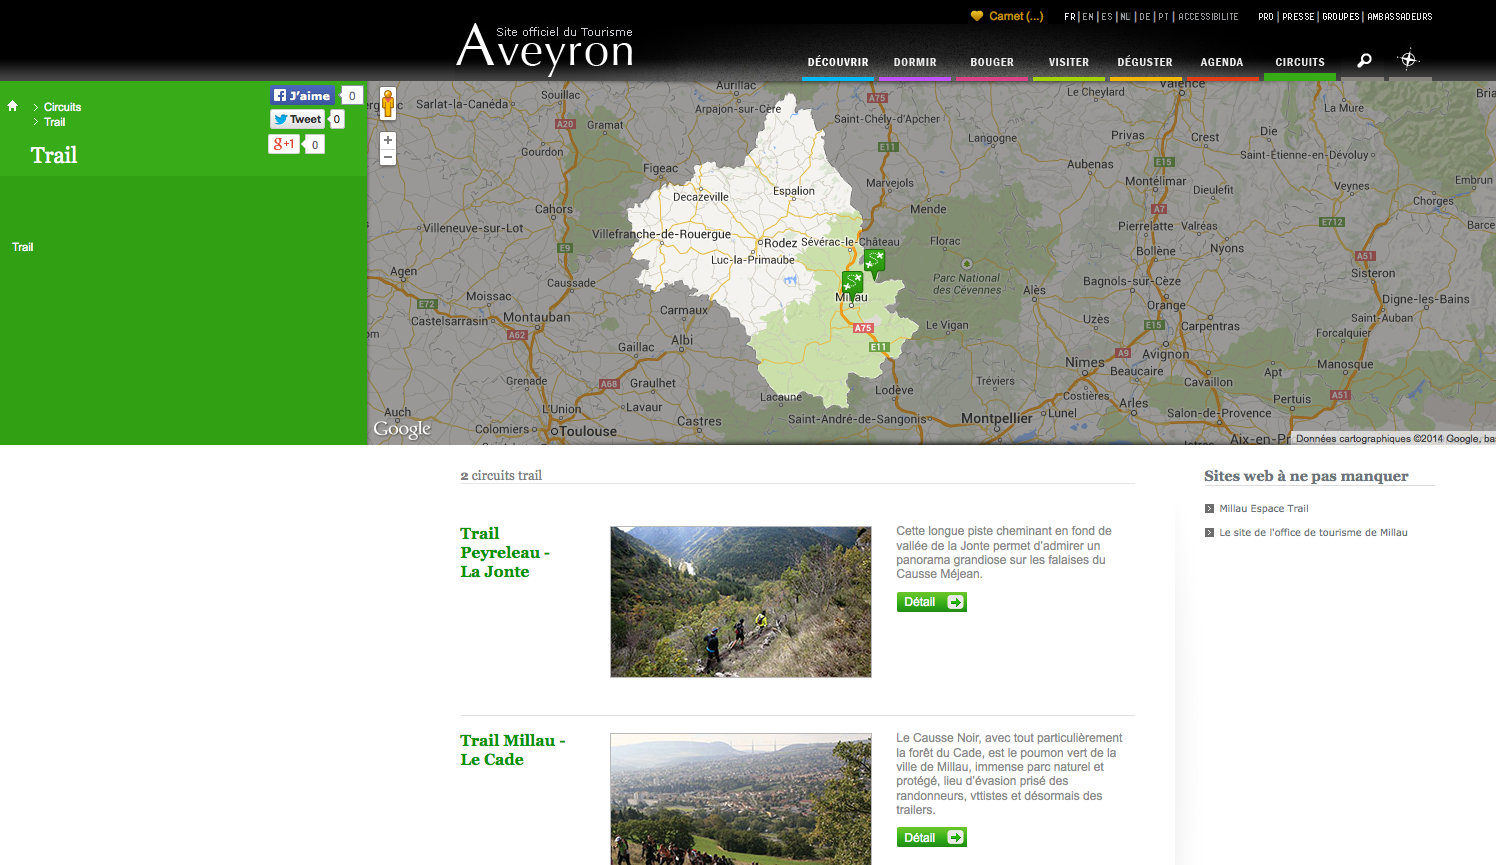 Les nouvelles pages « TRAIL » pour l’Aveyron